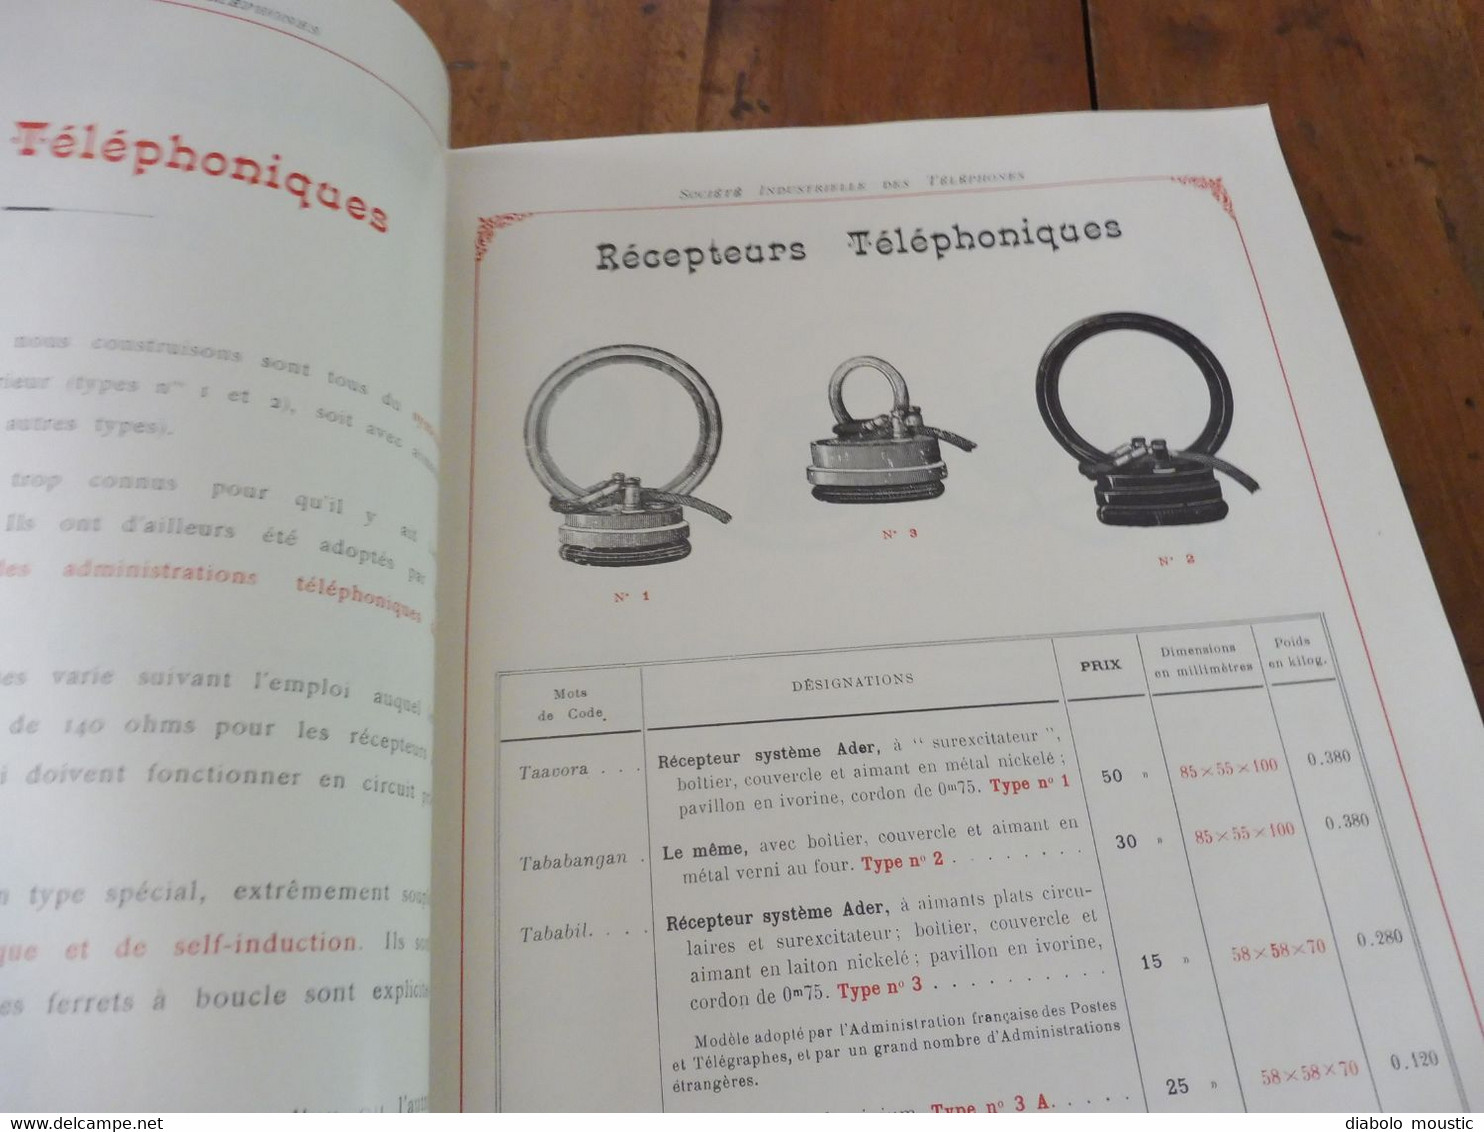 1909  Catalogue Ancien CATALOGUE GÉNÉRAL De TÉLÉPHONIE (Société Industrielle Des Téléphones) - Telefontechnik